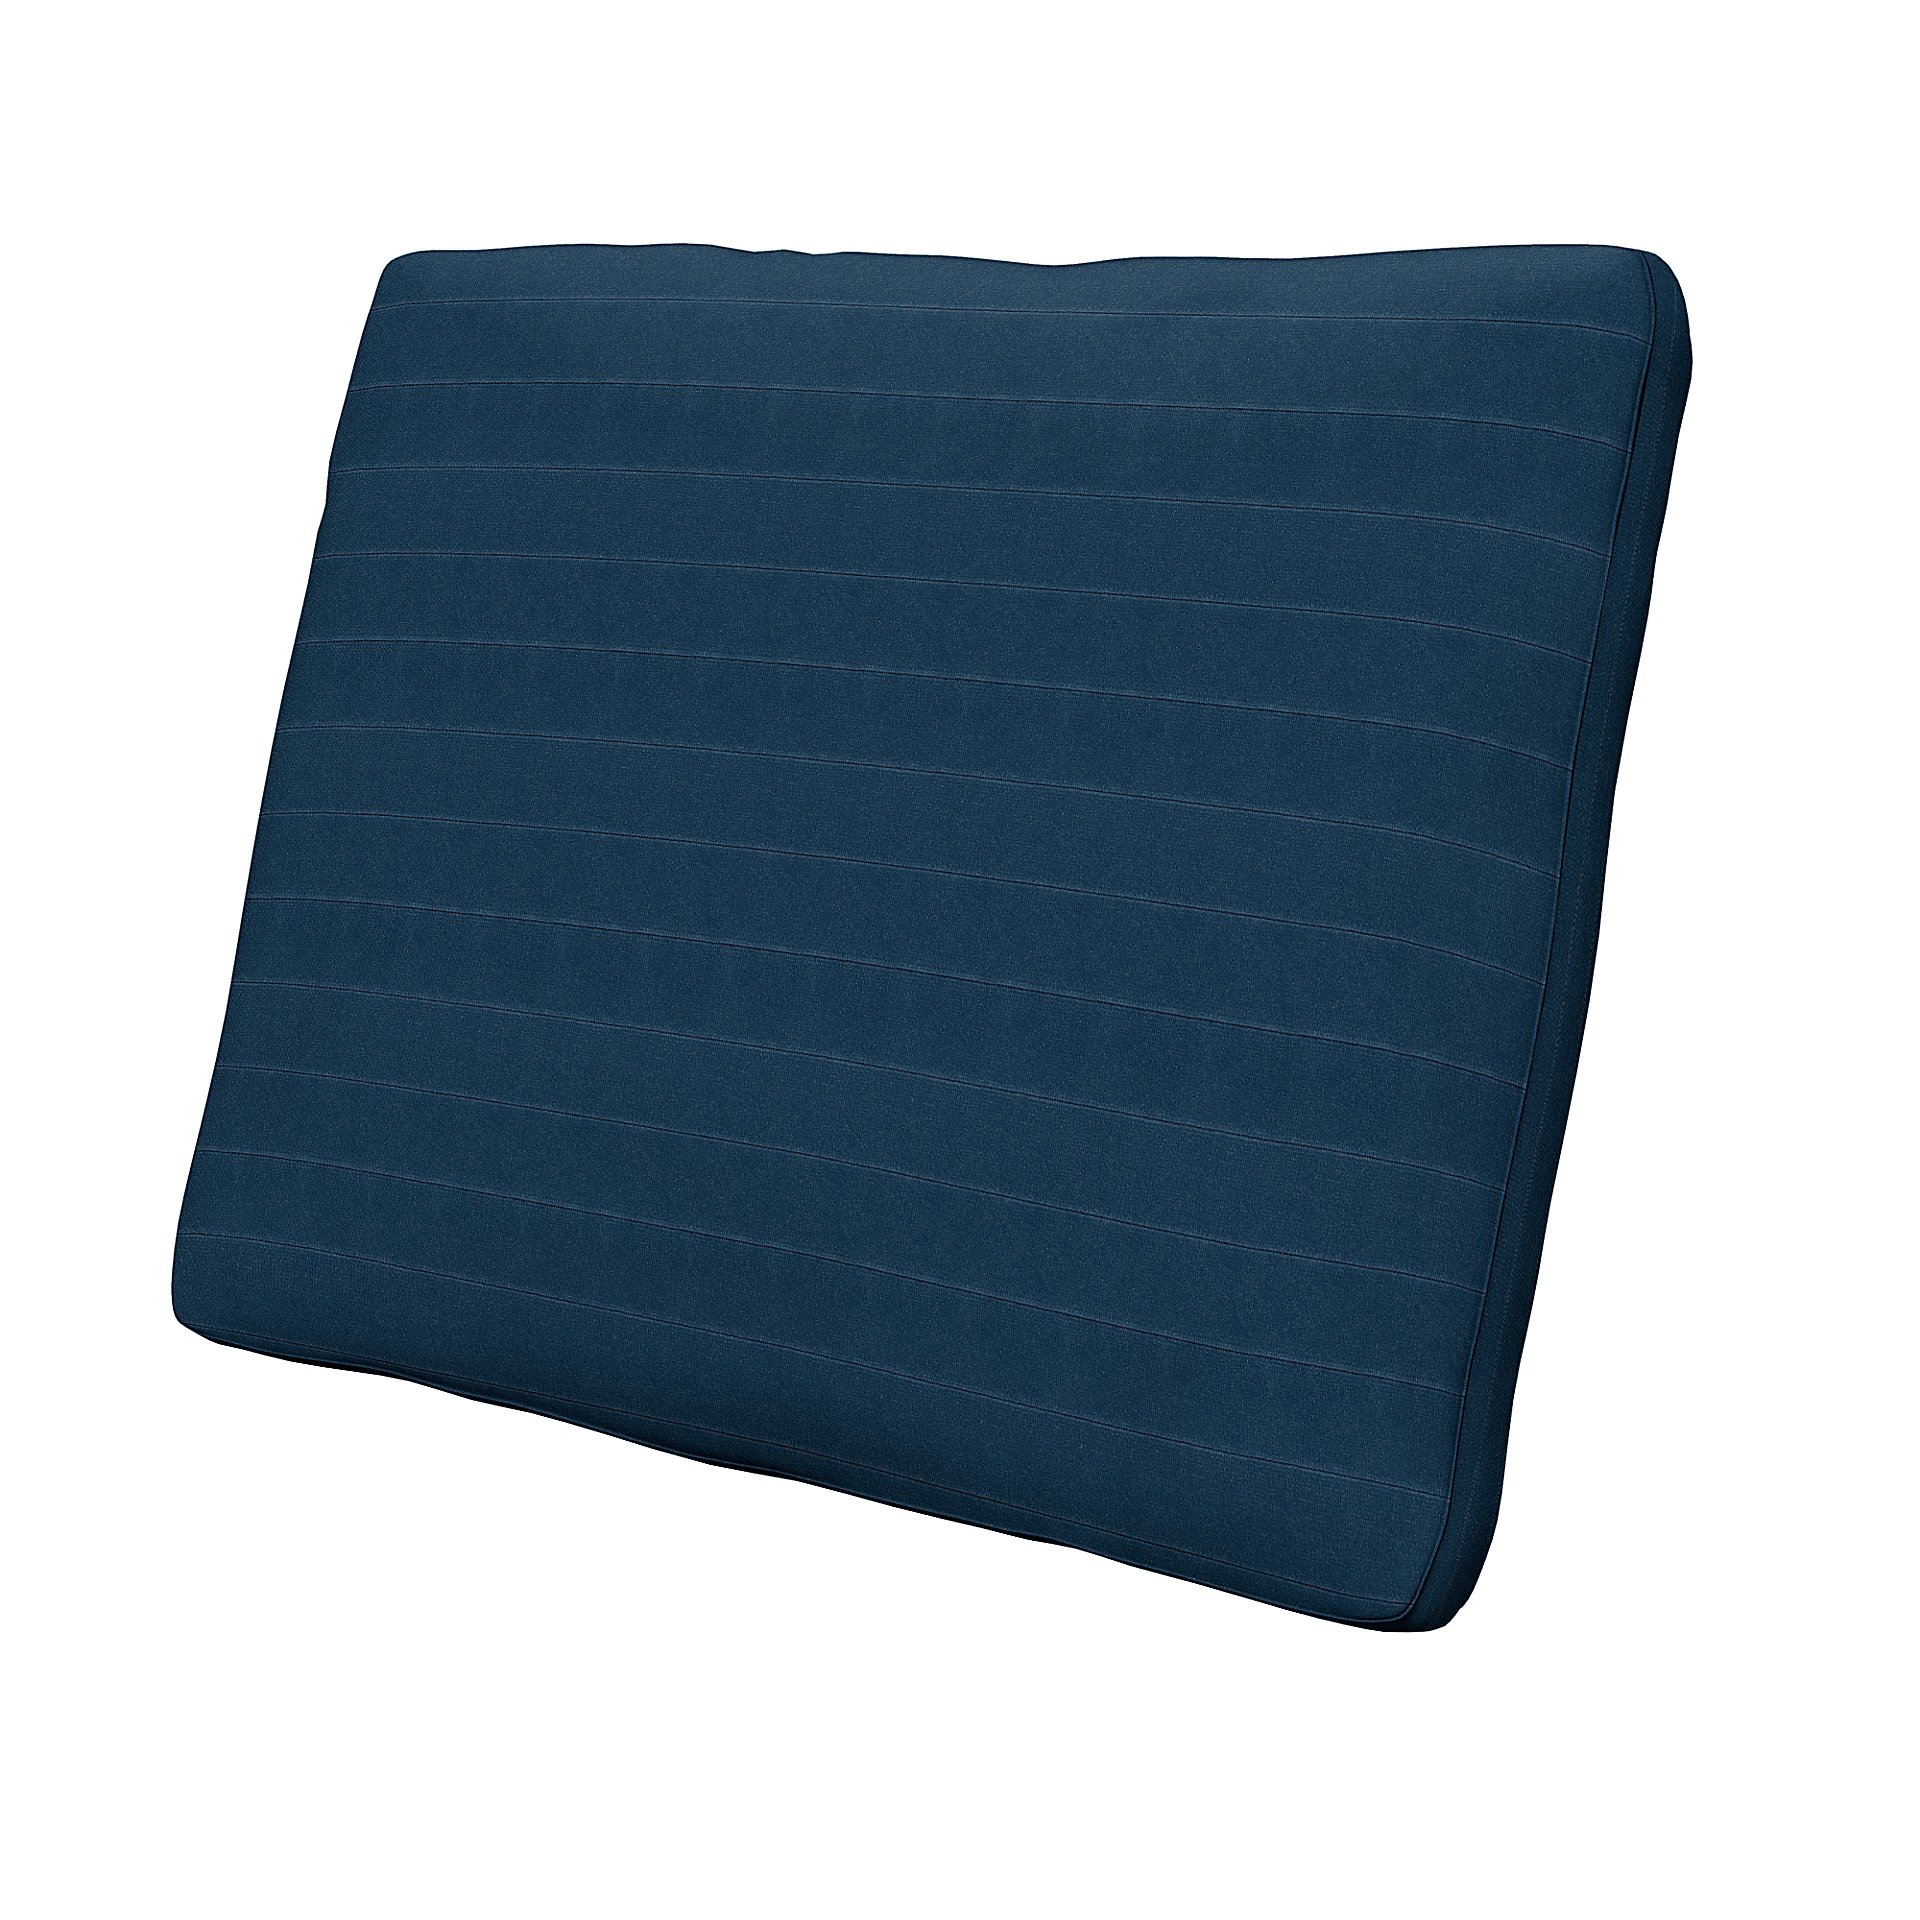 IKEA - Cushion Cover Karlstad 58x48x5 cm, Denim Blue, Velvet - Bemz